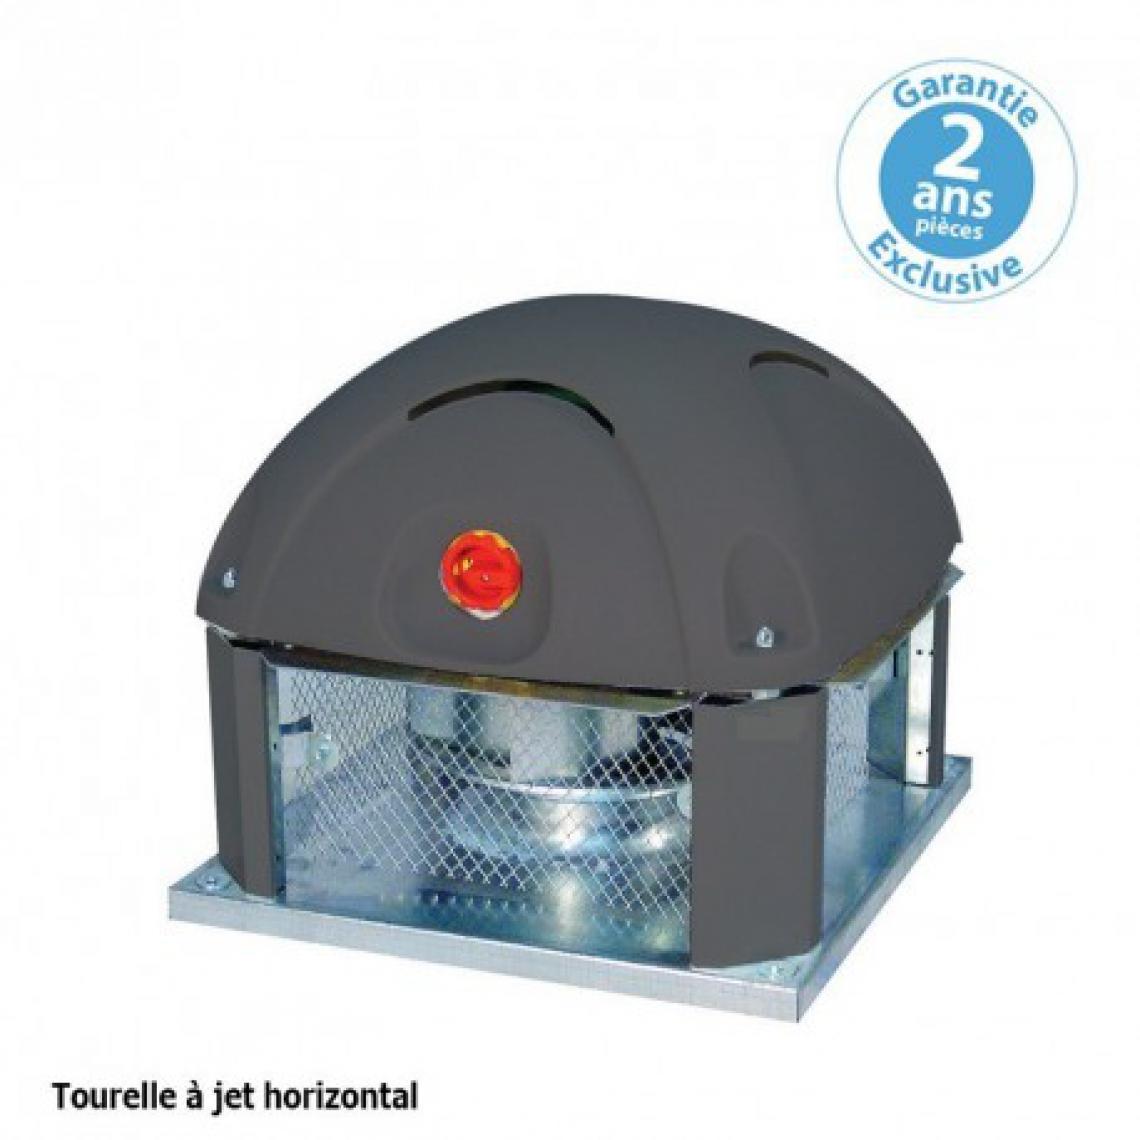 Furnotel - Tourelle 1 vitesse - triphasée - refoulement horizontal - 5000 m³ / h sous 200 Pa - - VMC, Ventilation